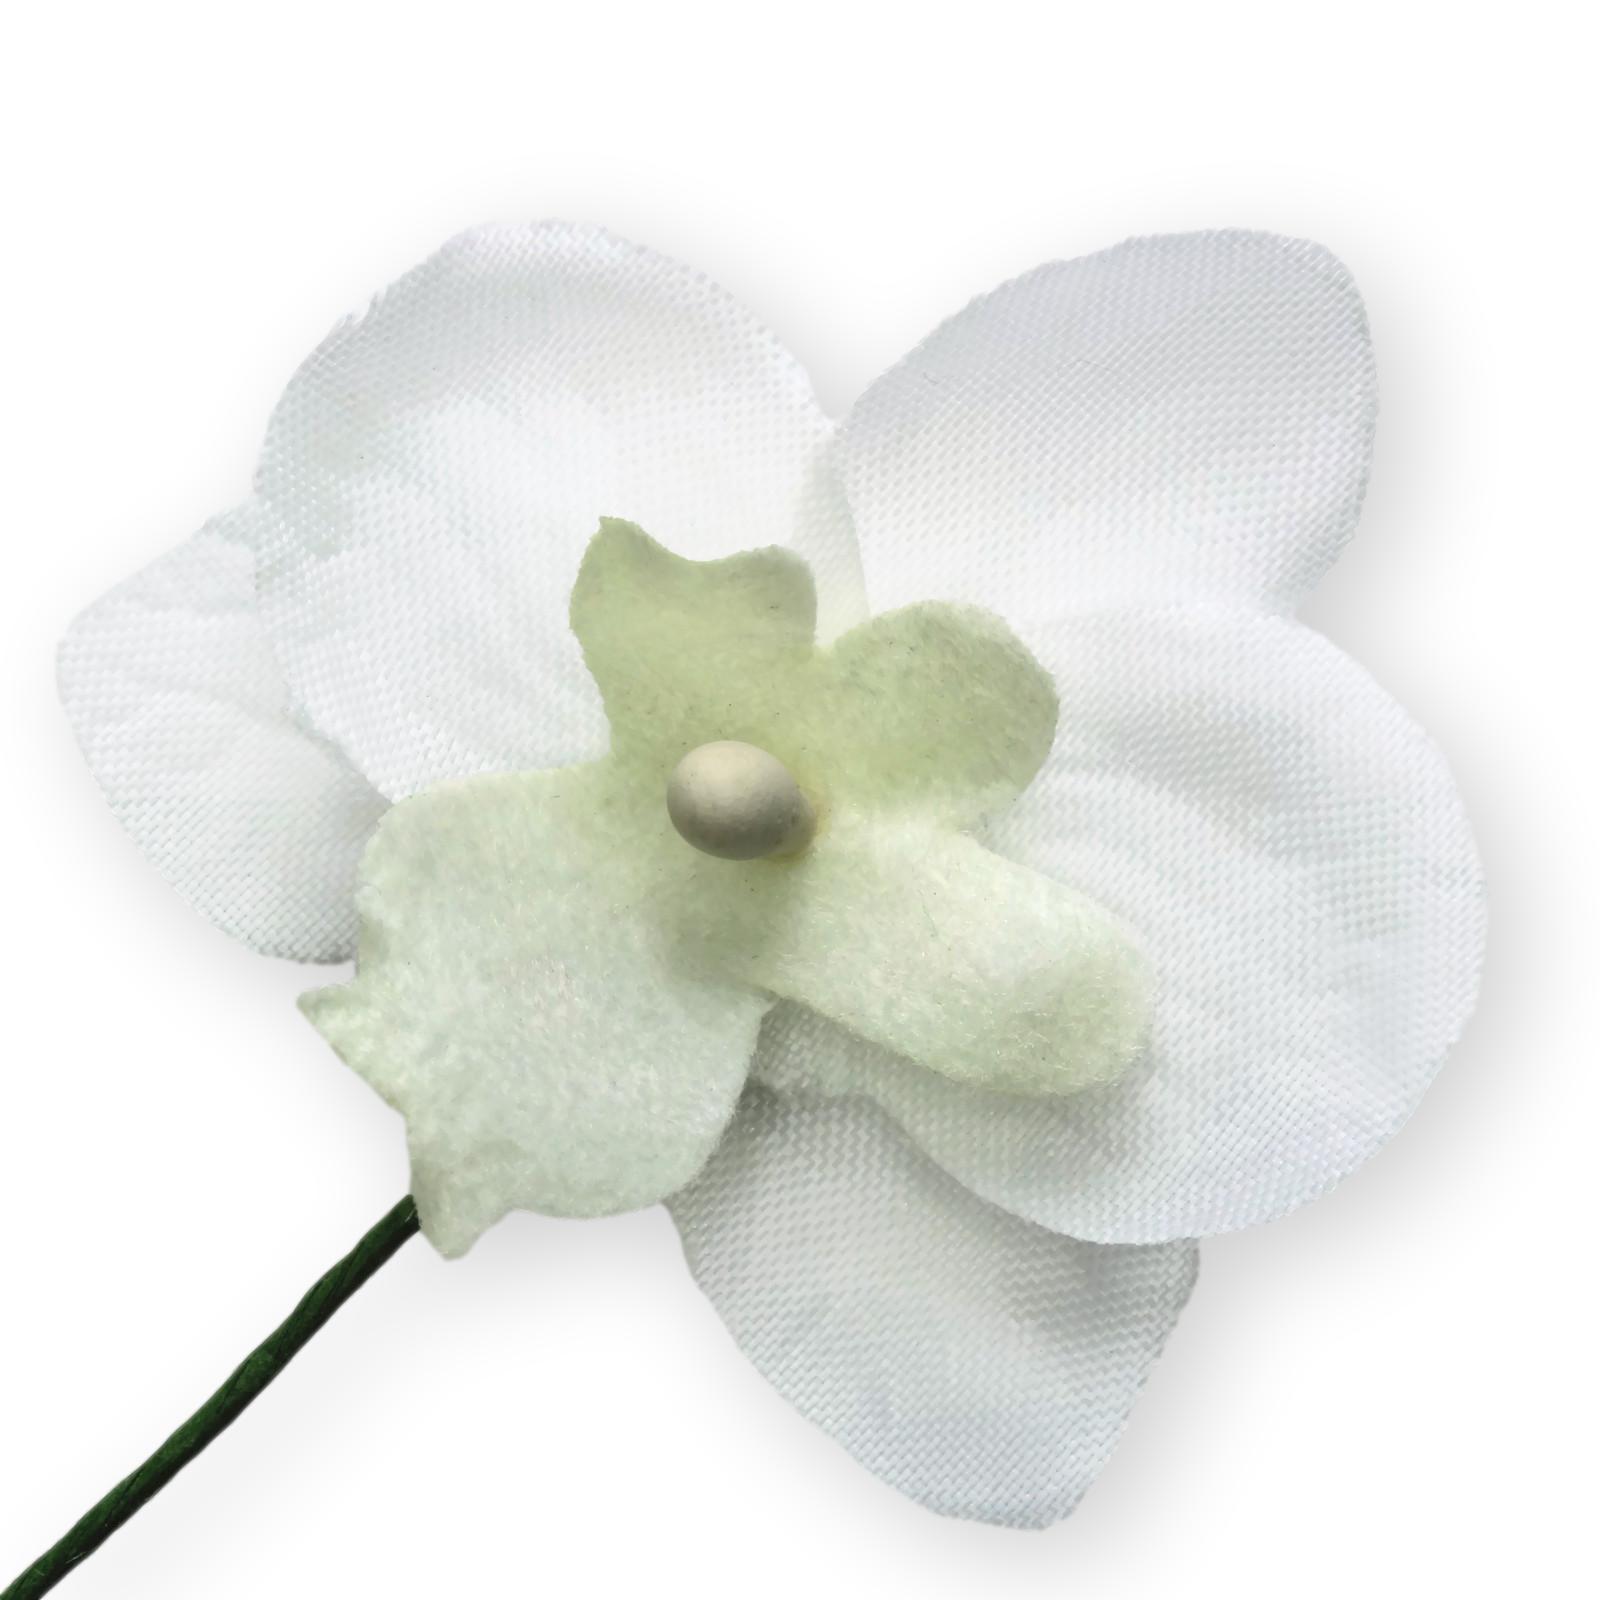 Blumenanstecker/ Anstecker mit Blüte  Orchidee weiß/burgund   Hochzeit  Neu